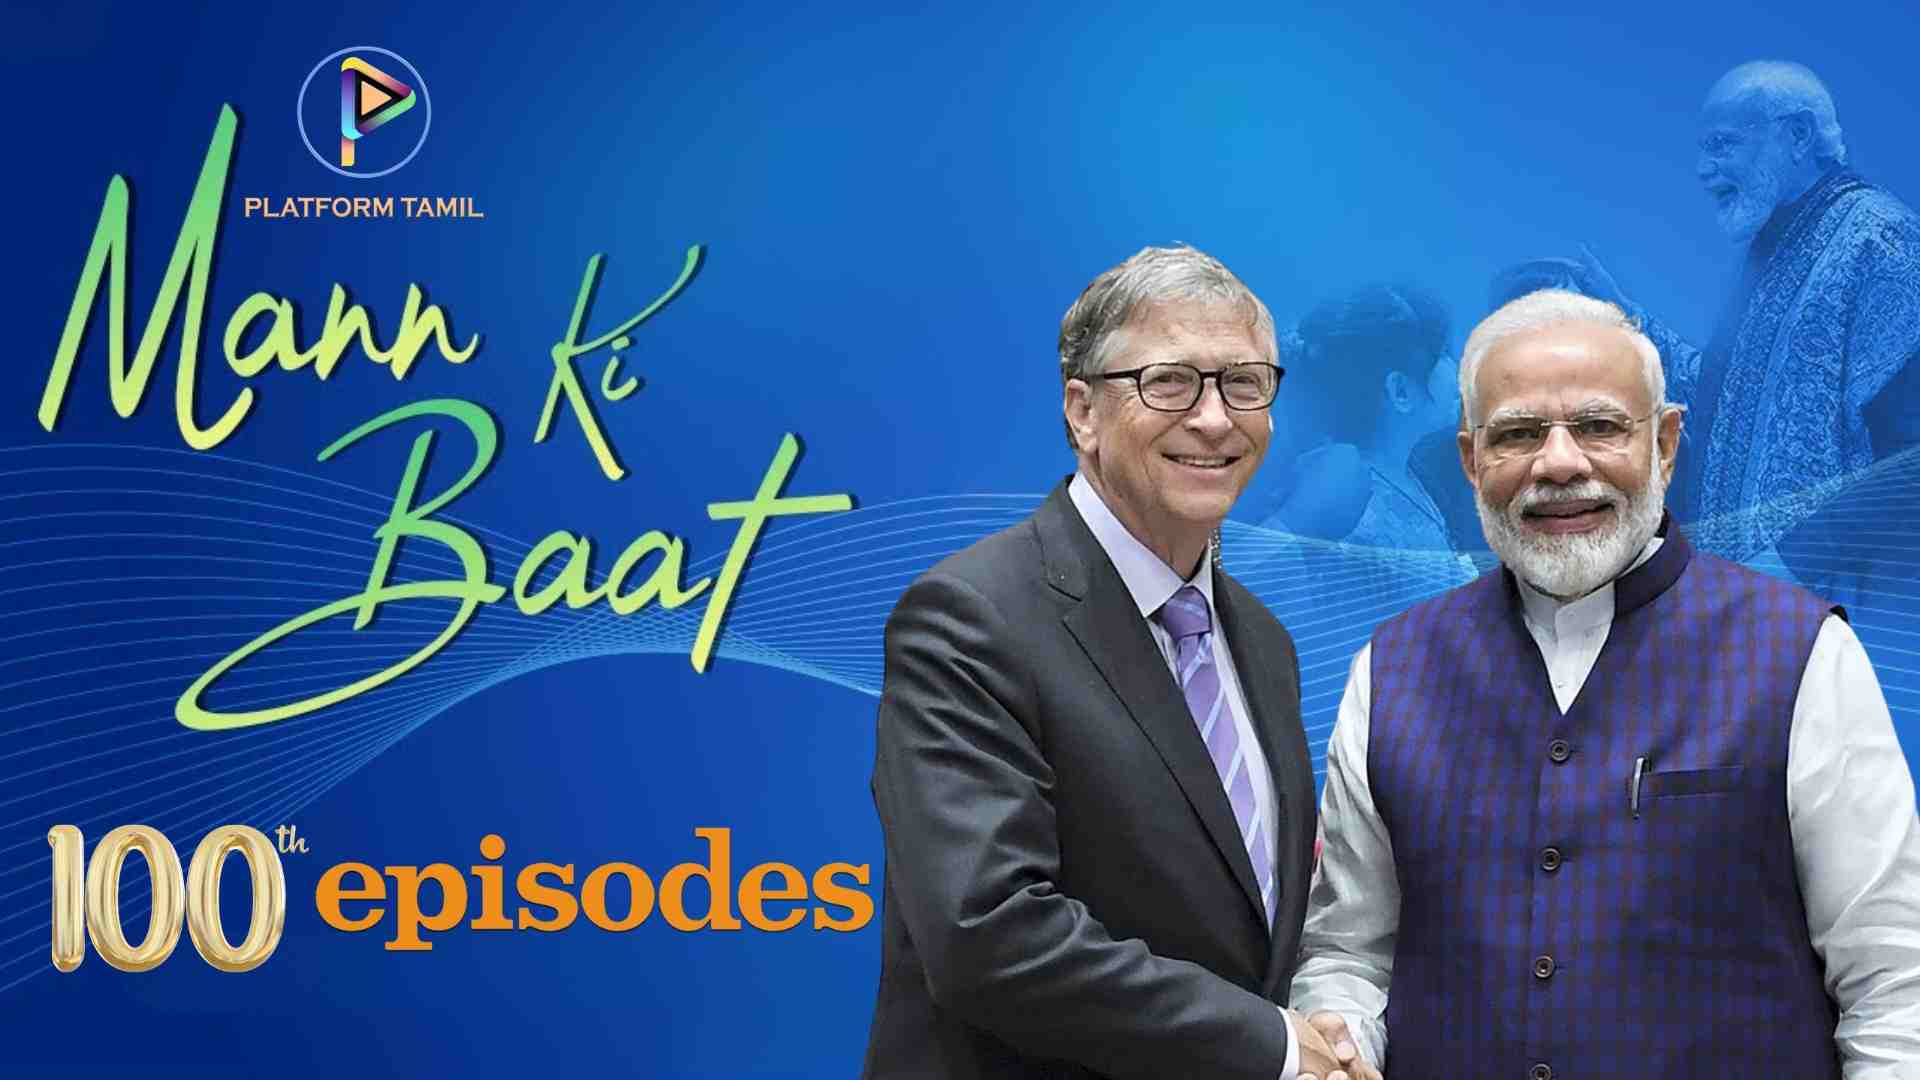 Mann Ki Baat 100th episode - Platform Tamil